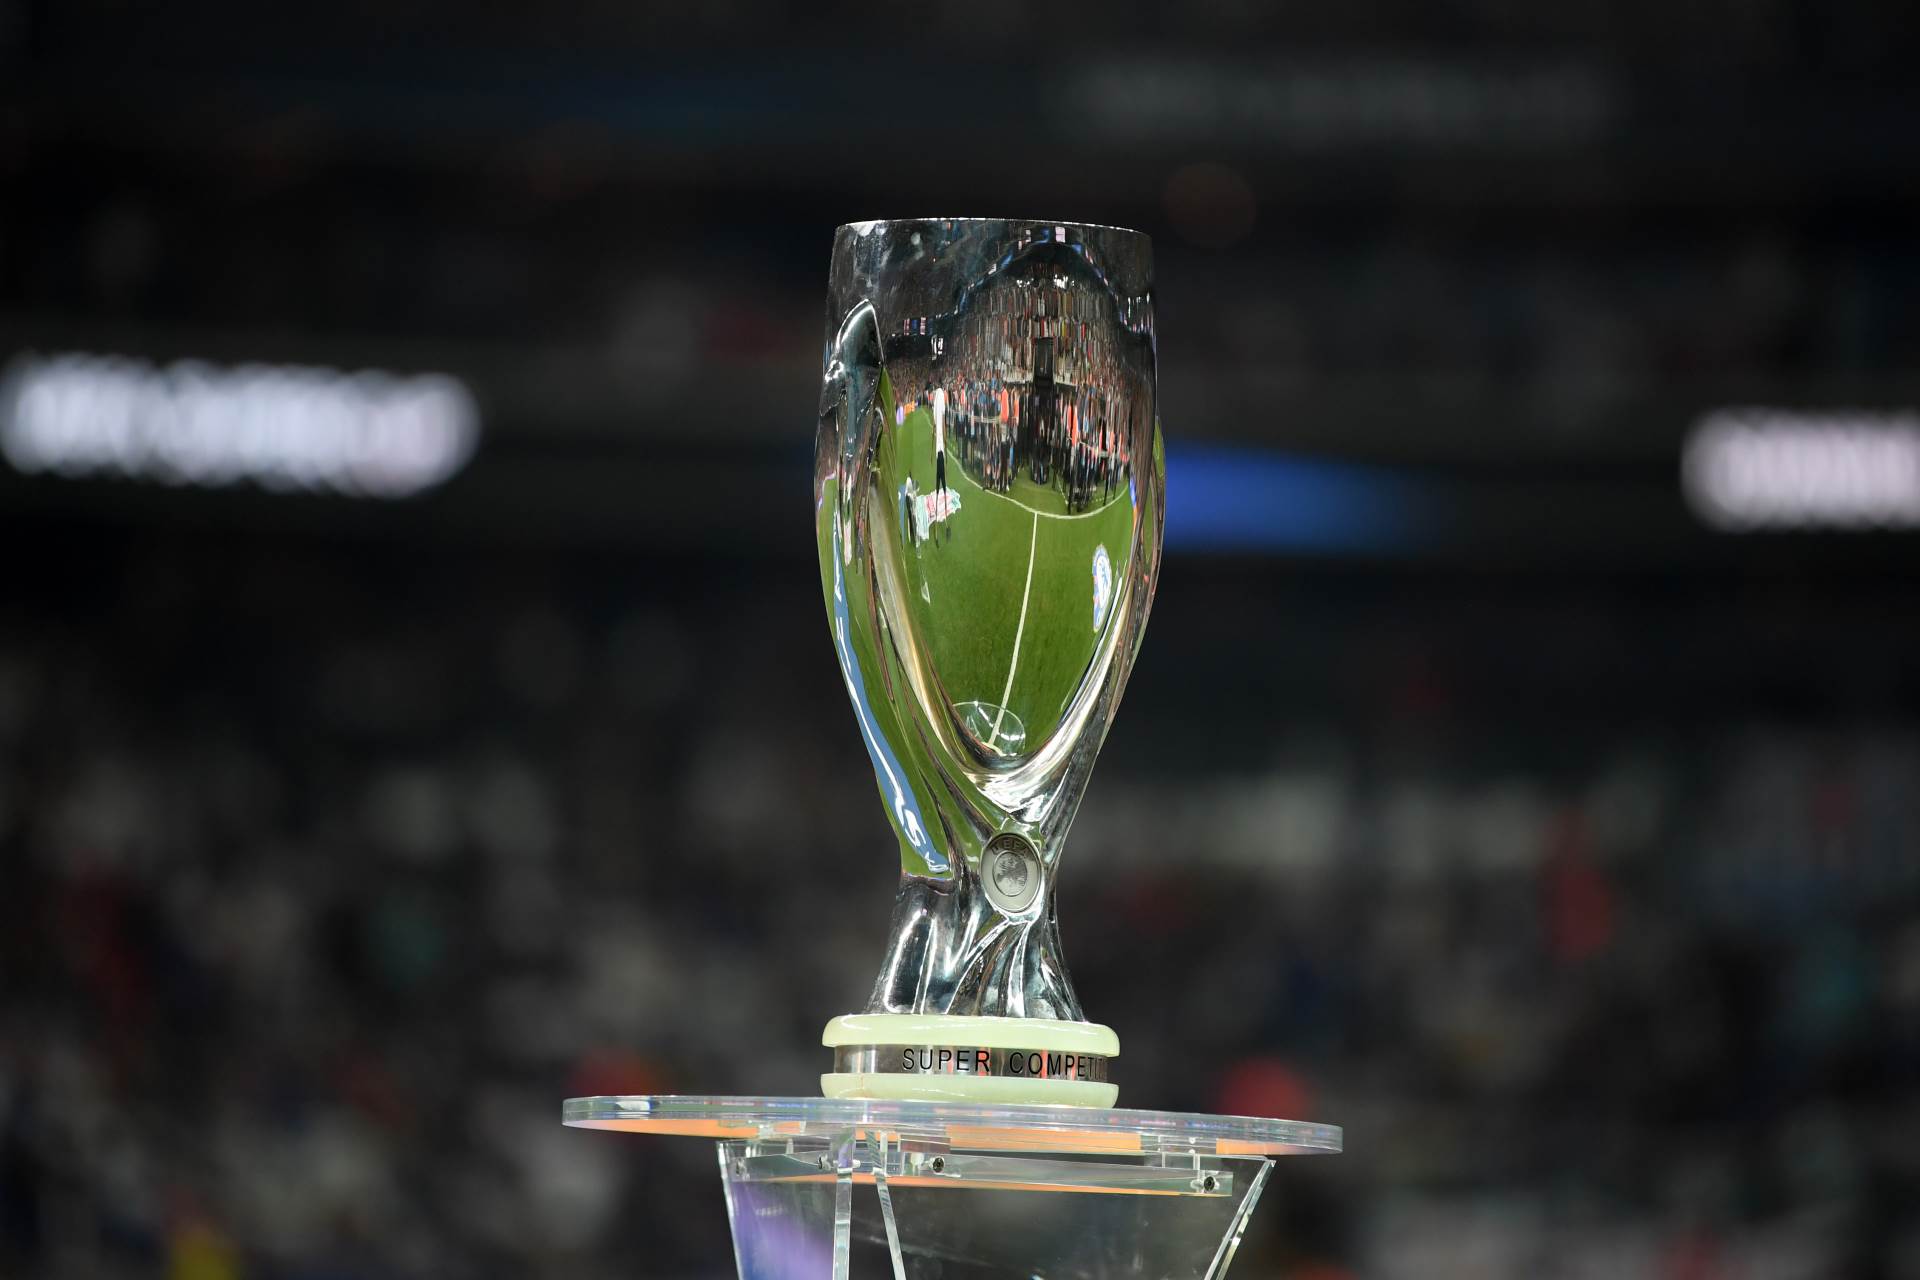  UEFA odlučila, šampion Evrope stiže u komšiluk: Navijači mogu na Superkup! 